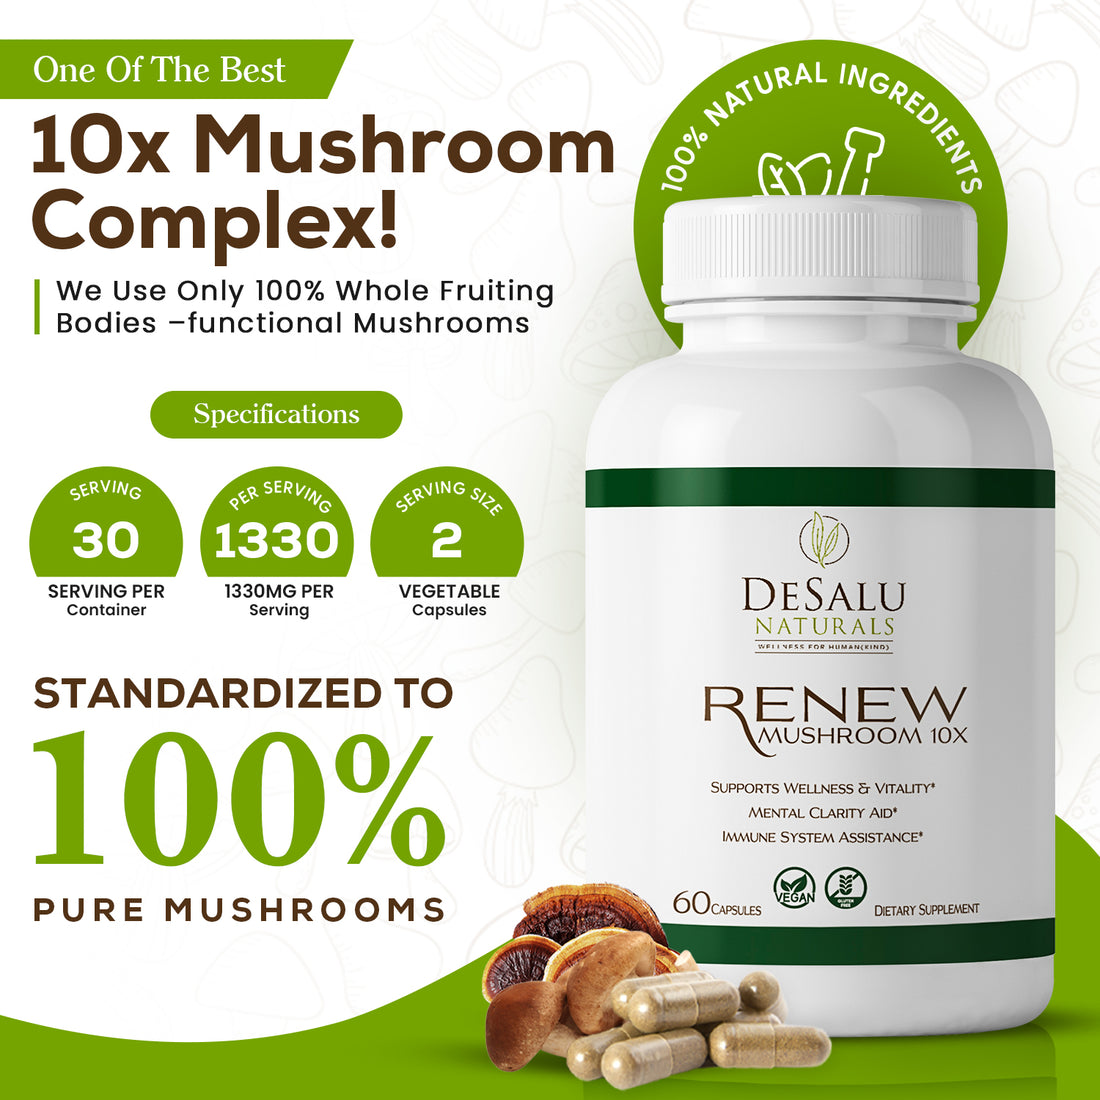 Desalu Naturals Mushroom 10x Complex Vitamins